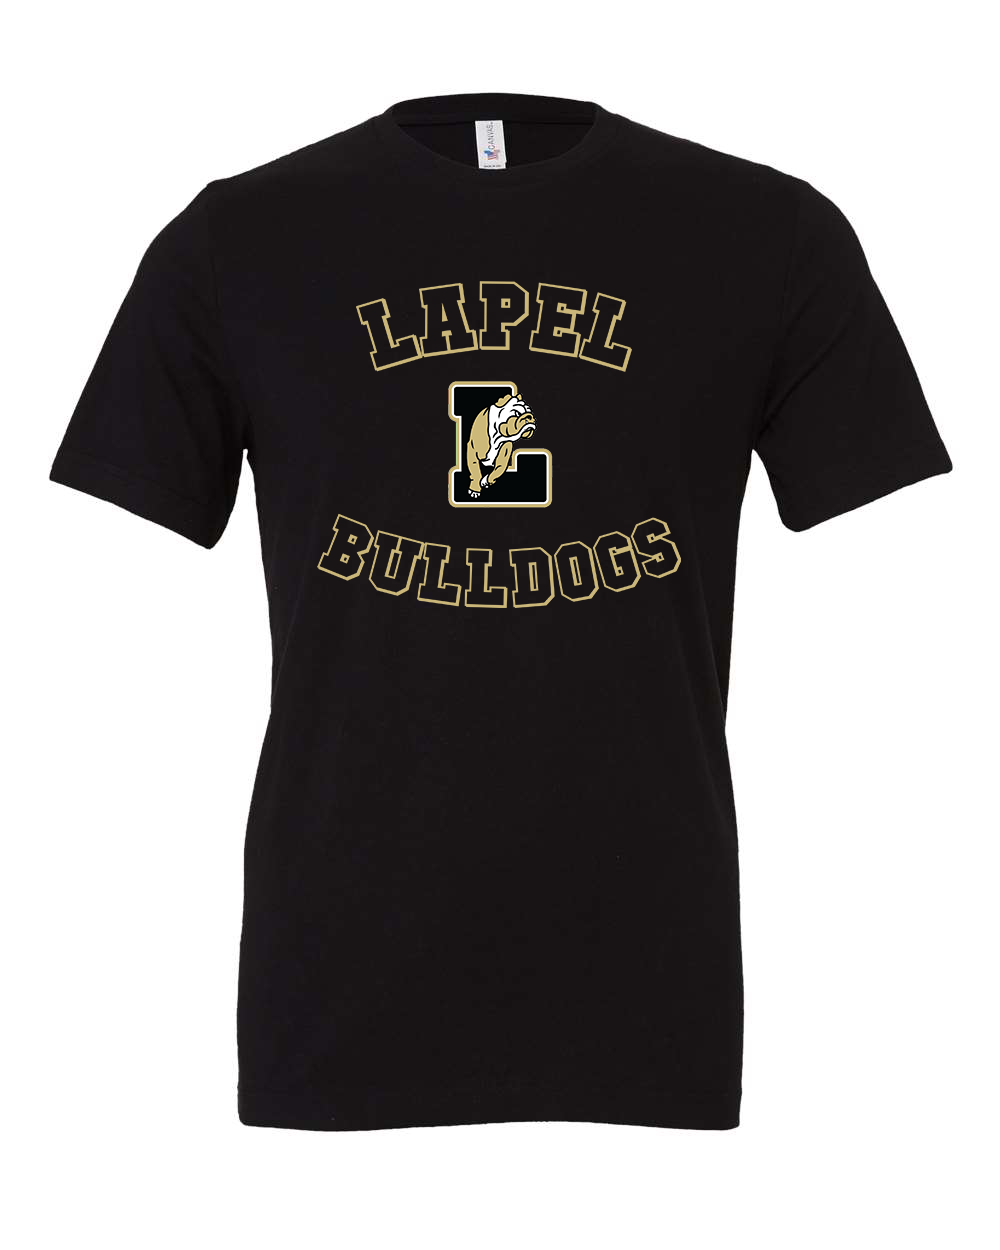 Lapel Bulldogs Tshirt - Black